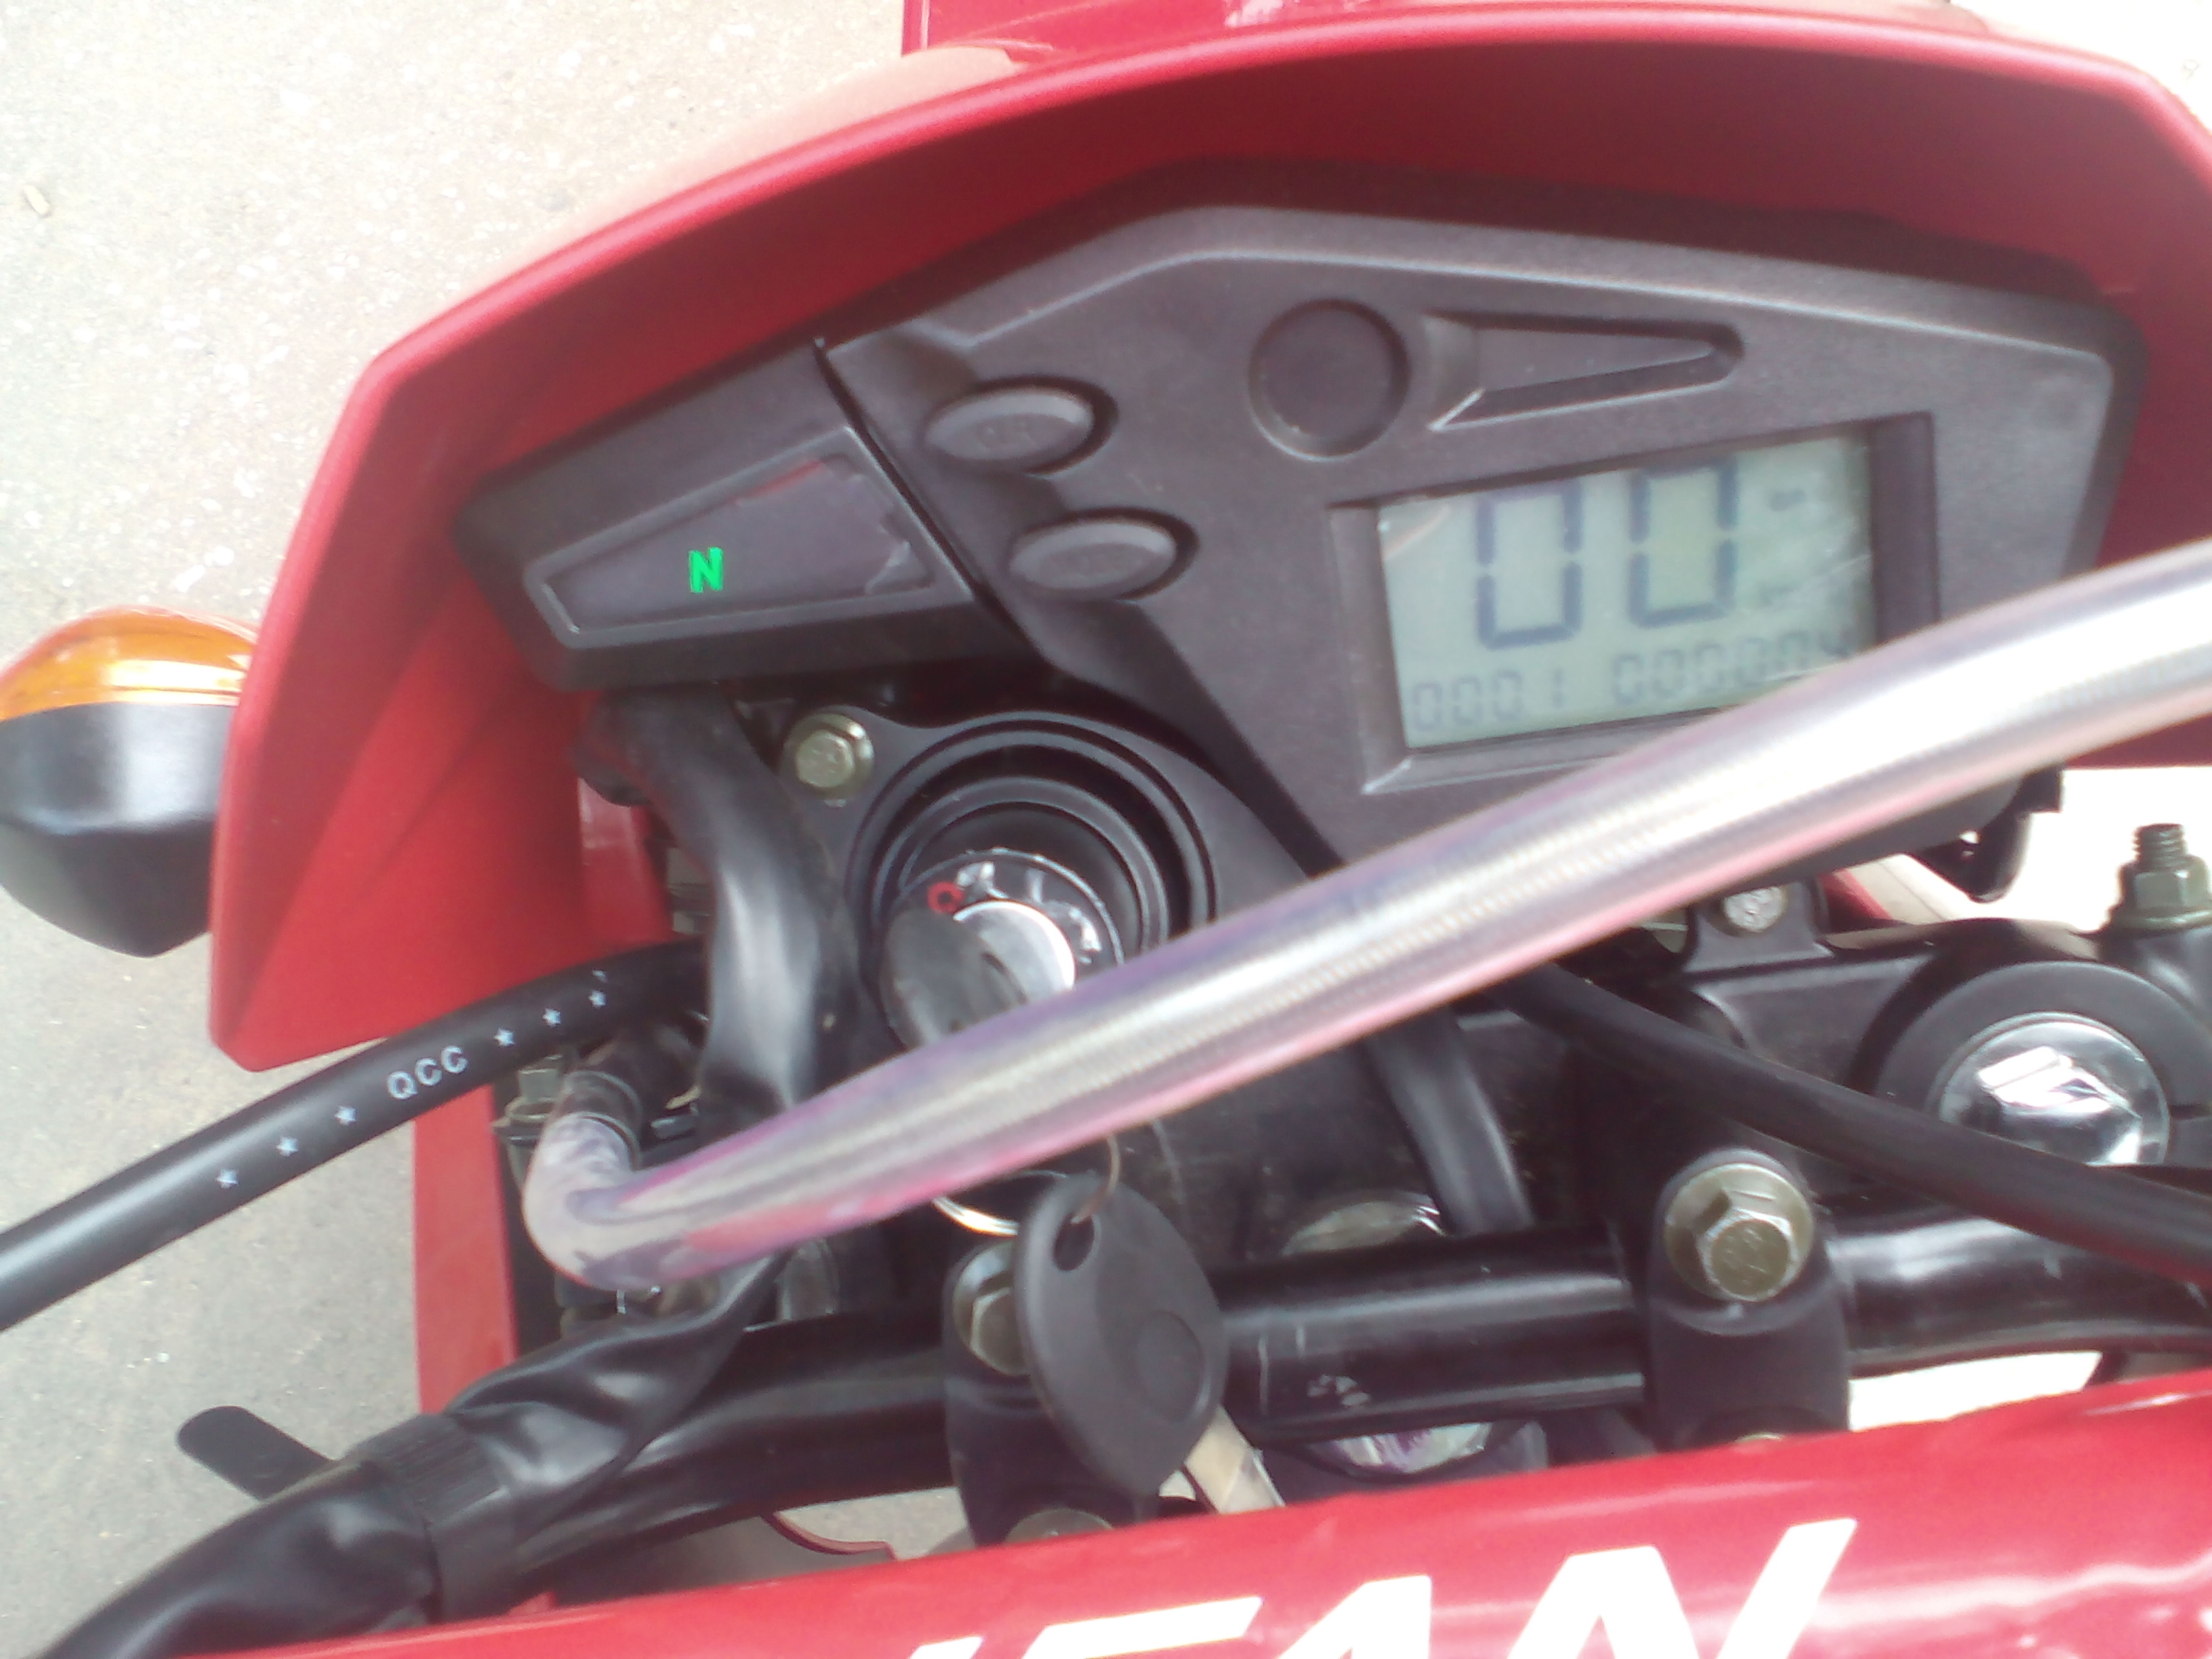 мотоцикл Lifan LF200gy-3b, приборная панель, фото